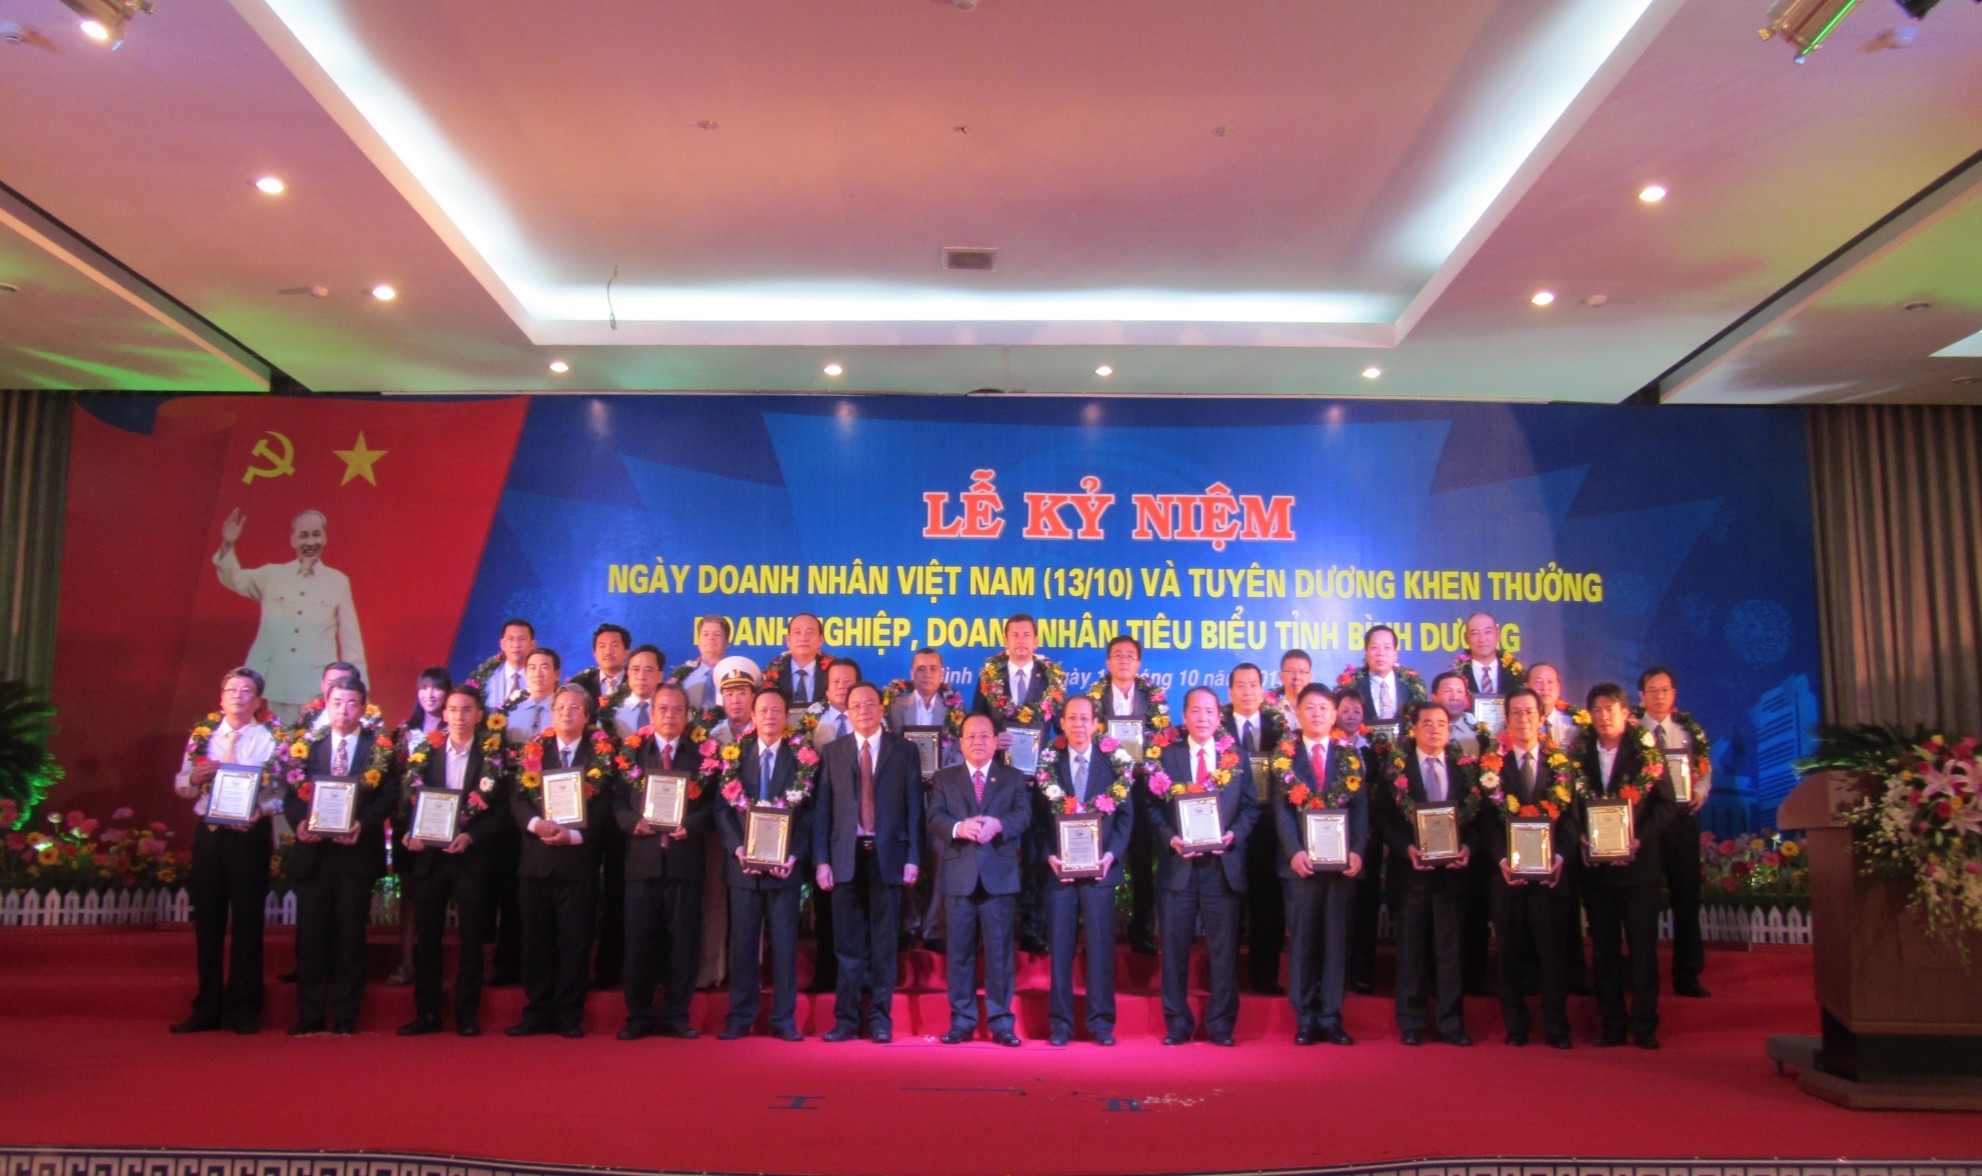 Ngày 11/10/2013, Công Ty TNHH Ắc Quy GS Việt Nam đã vinh dự được mời tham gia và nhận bẳng khen của UBND tỉnh Bình Dương nhân dịp lễ kỷ niệm Ngày Doanh Nhân Việt Nam ( 13/10/2004 – 13/10/2013)